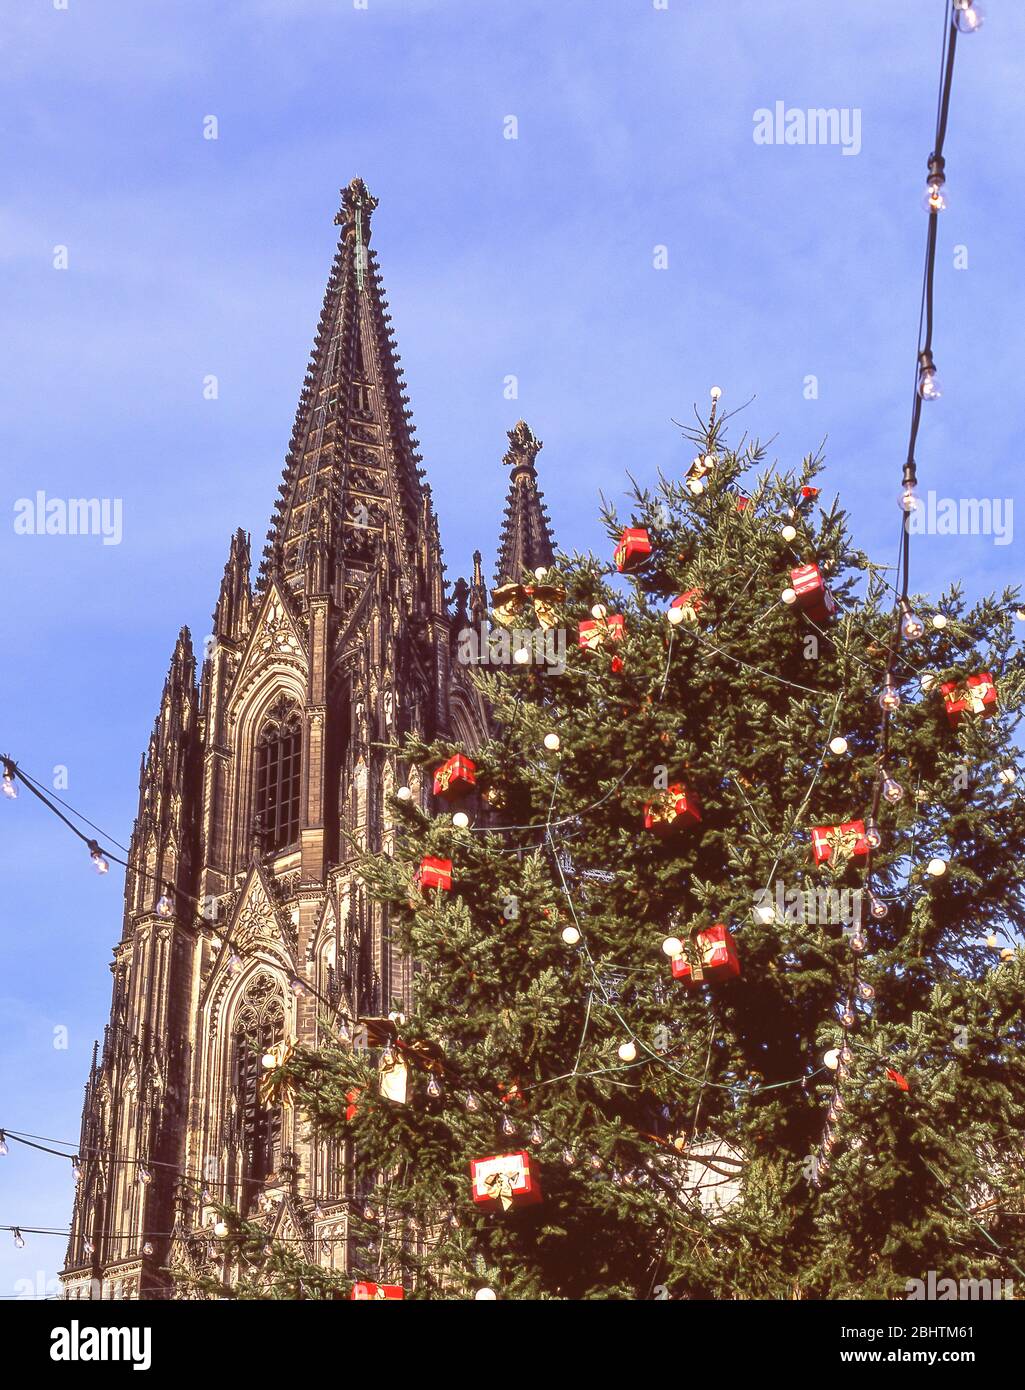 Albero di Natale e guglia della Cattedrale di Koln al mercato di Natale di Alter Markt, Colonia (Koln), Nordrhein-Westfalen, Repubblica federale di Germania Foto Stock